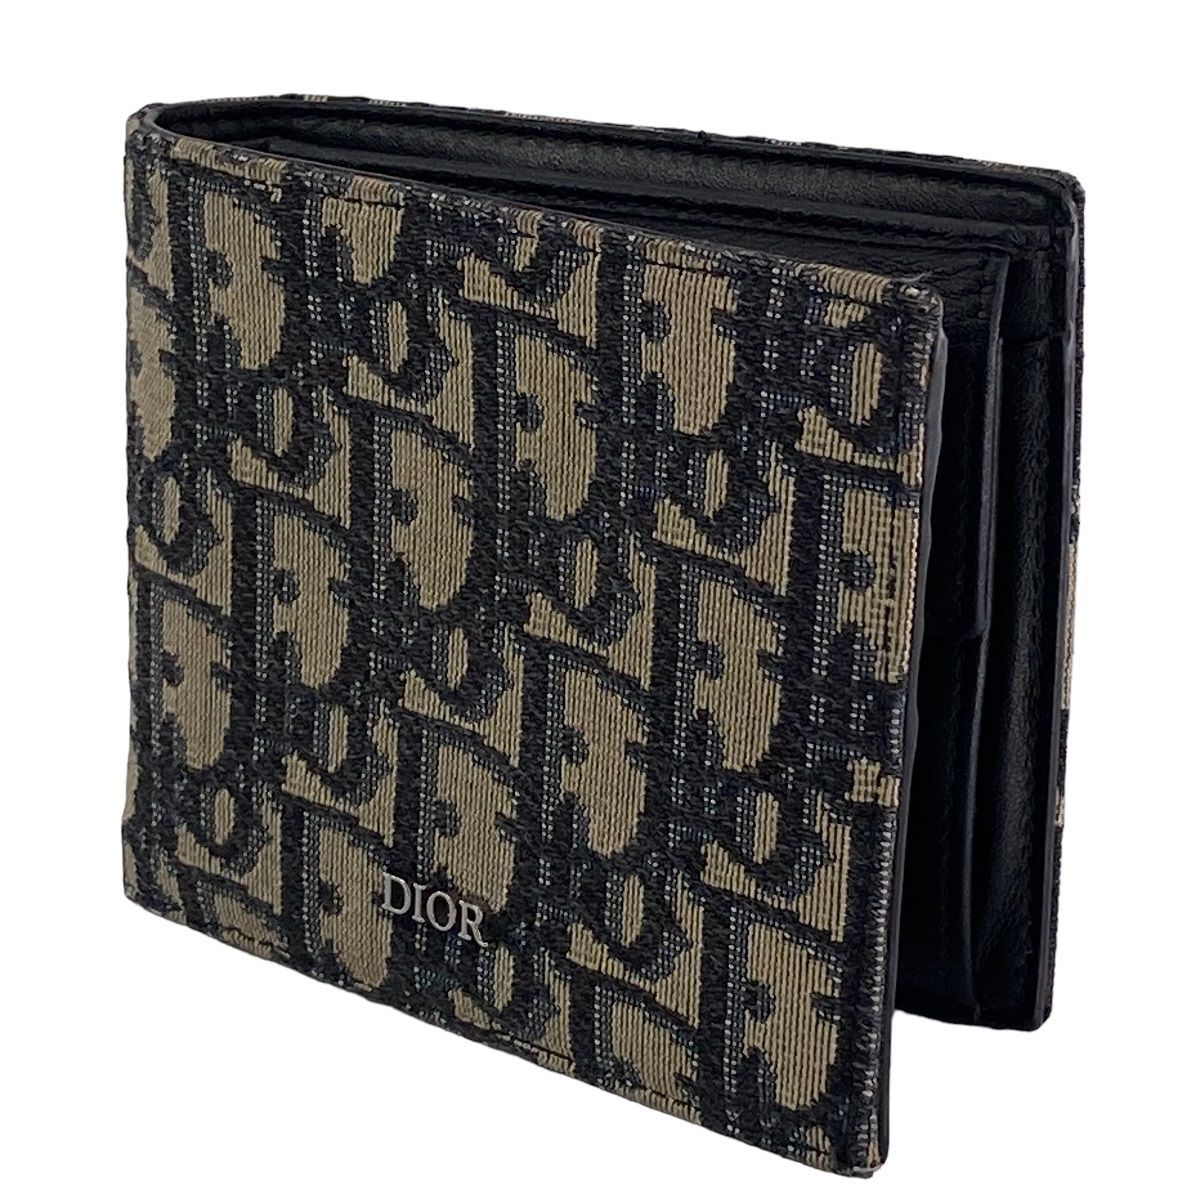 Dior 二つ折り財布 コインケース付きウォレット オブリーク柄内側にエンボス加工のDio